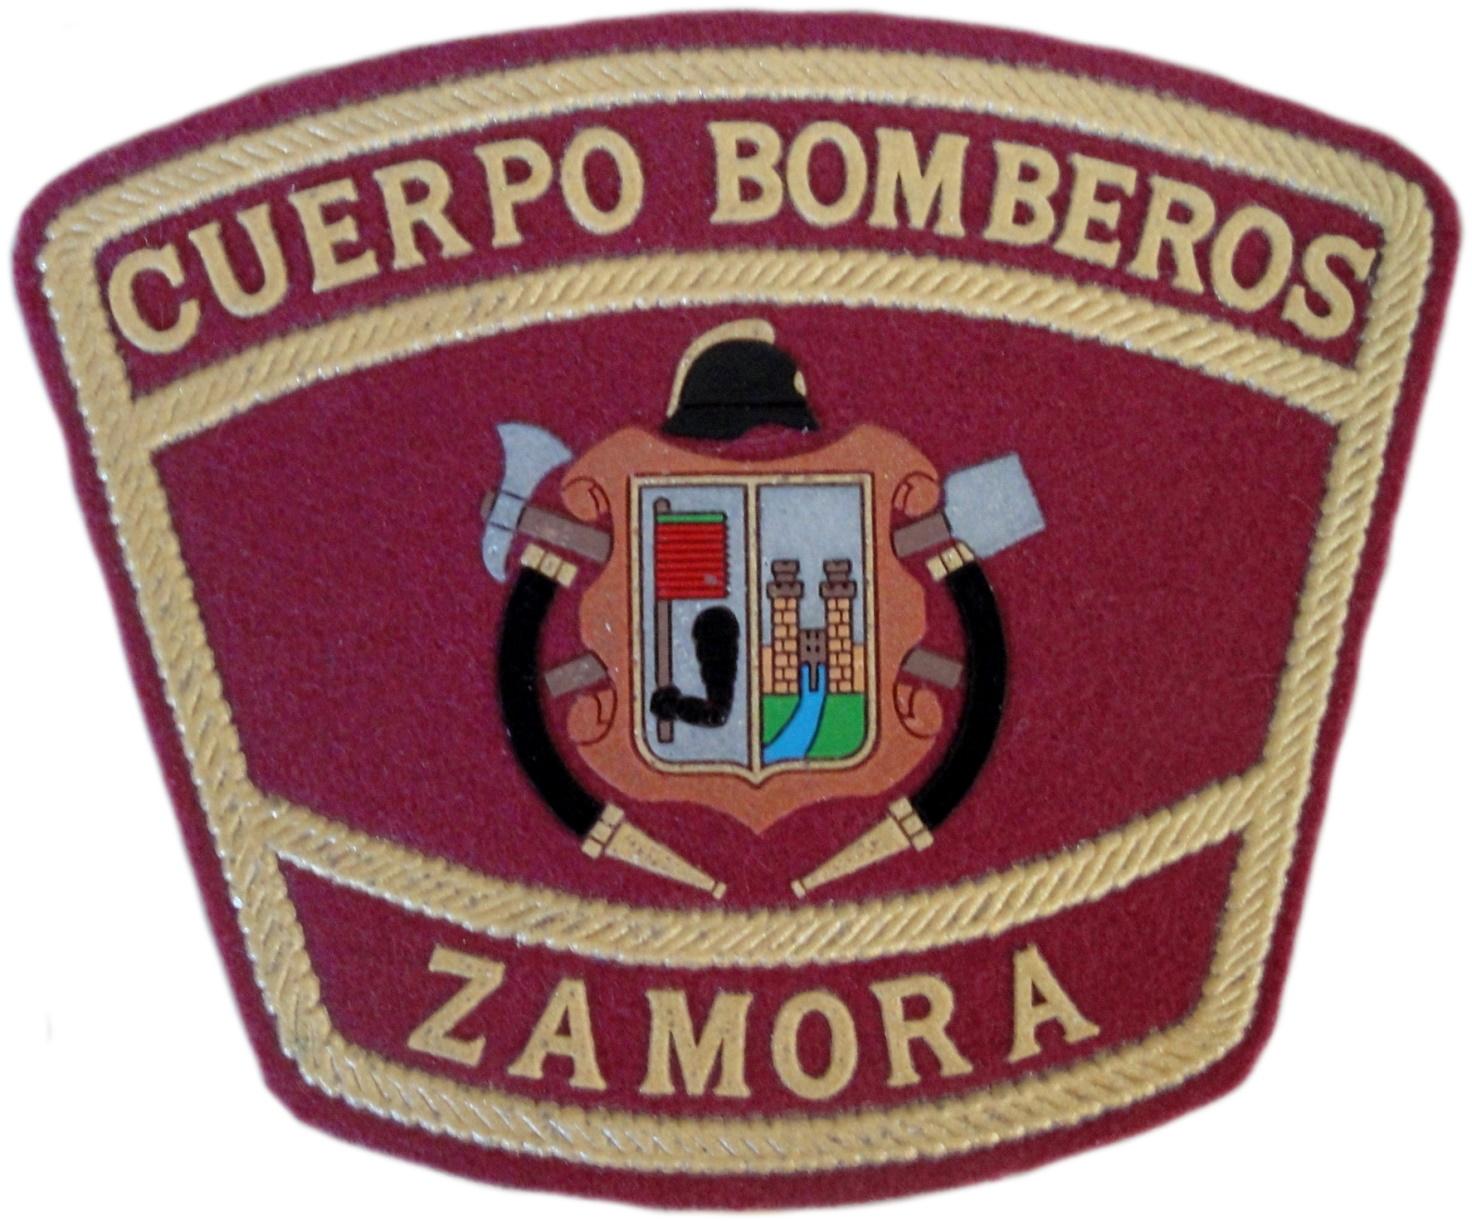 Cuerpo Bomberos de Zamora Servicio contra incendios y salvamento parche insignia emblema distintivo